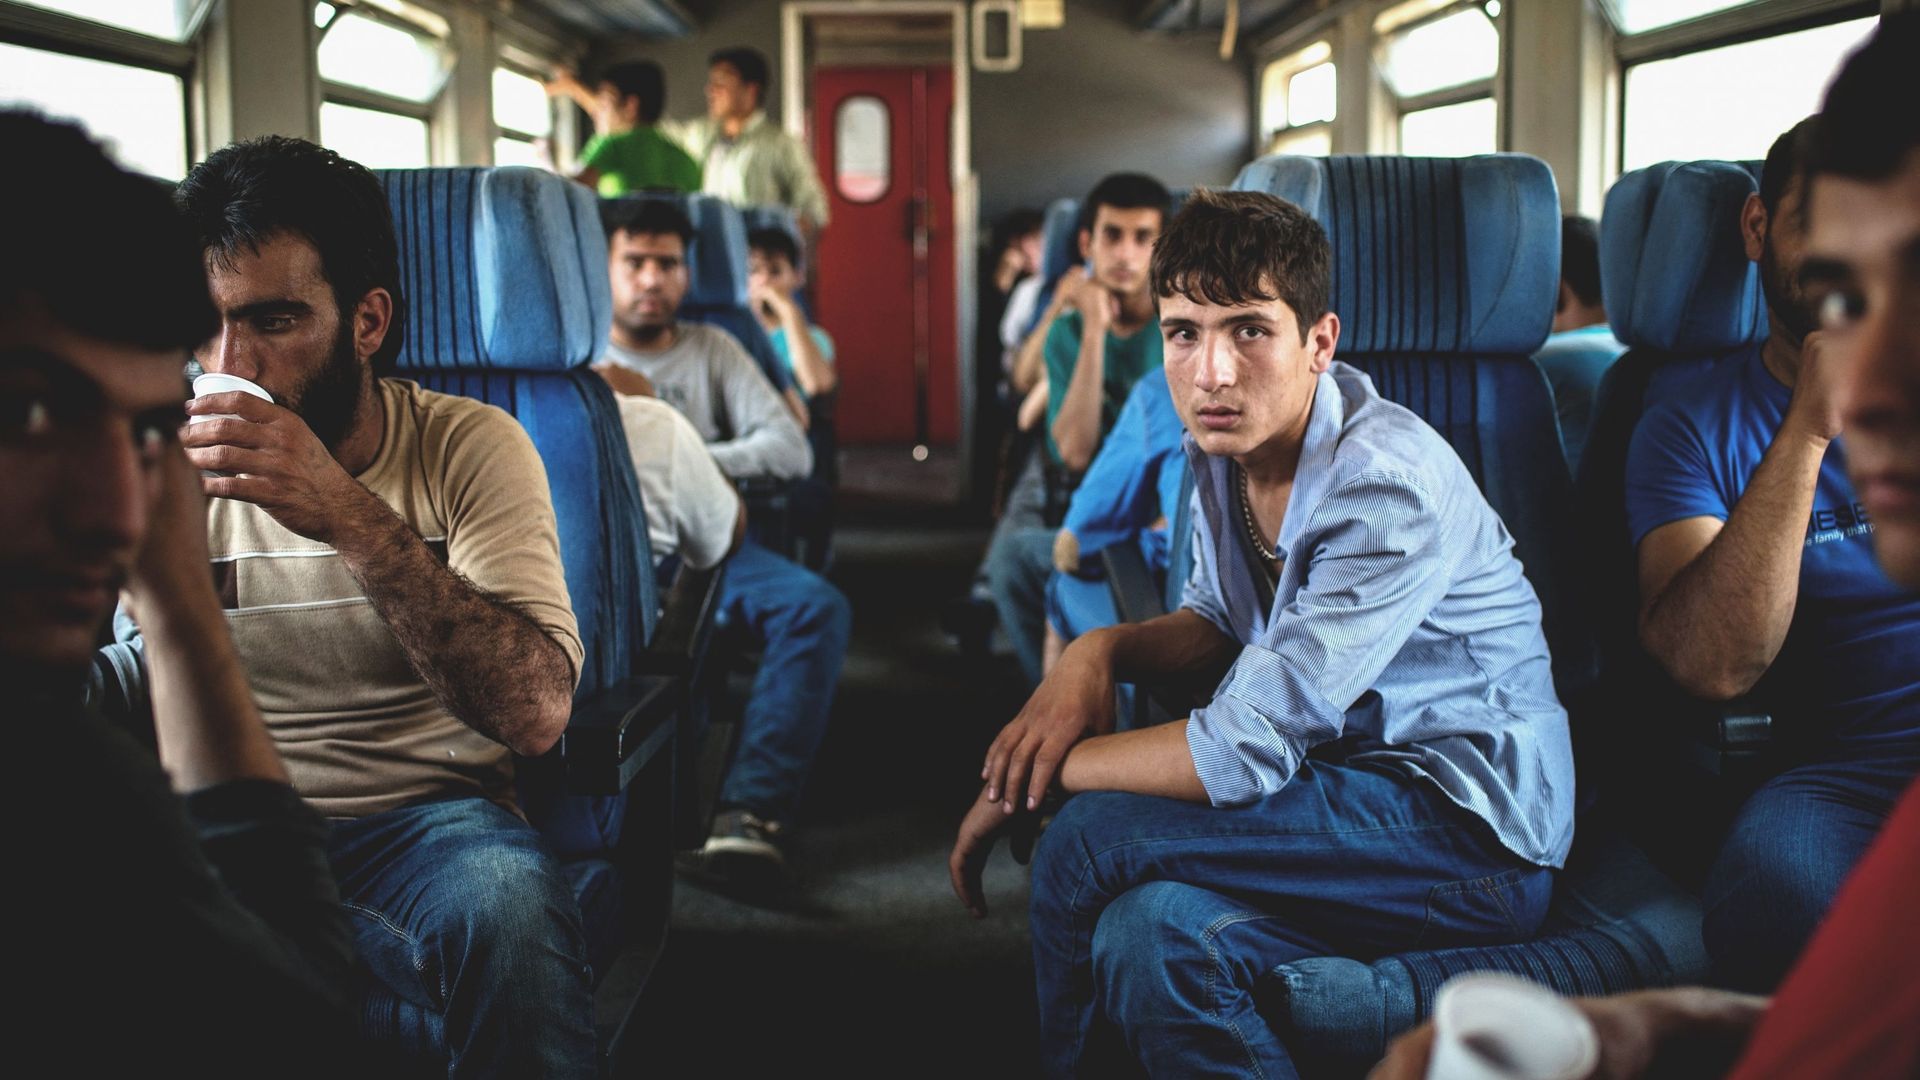 Un groupe de migrants afghans est assis dans un wagon d'un train, à destination de la ville de Subotica, dans le nord de la Serbie, près de la frontière hongroise.